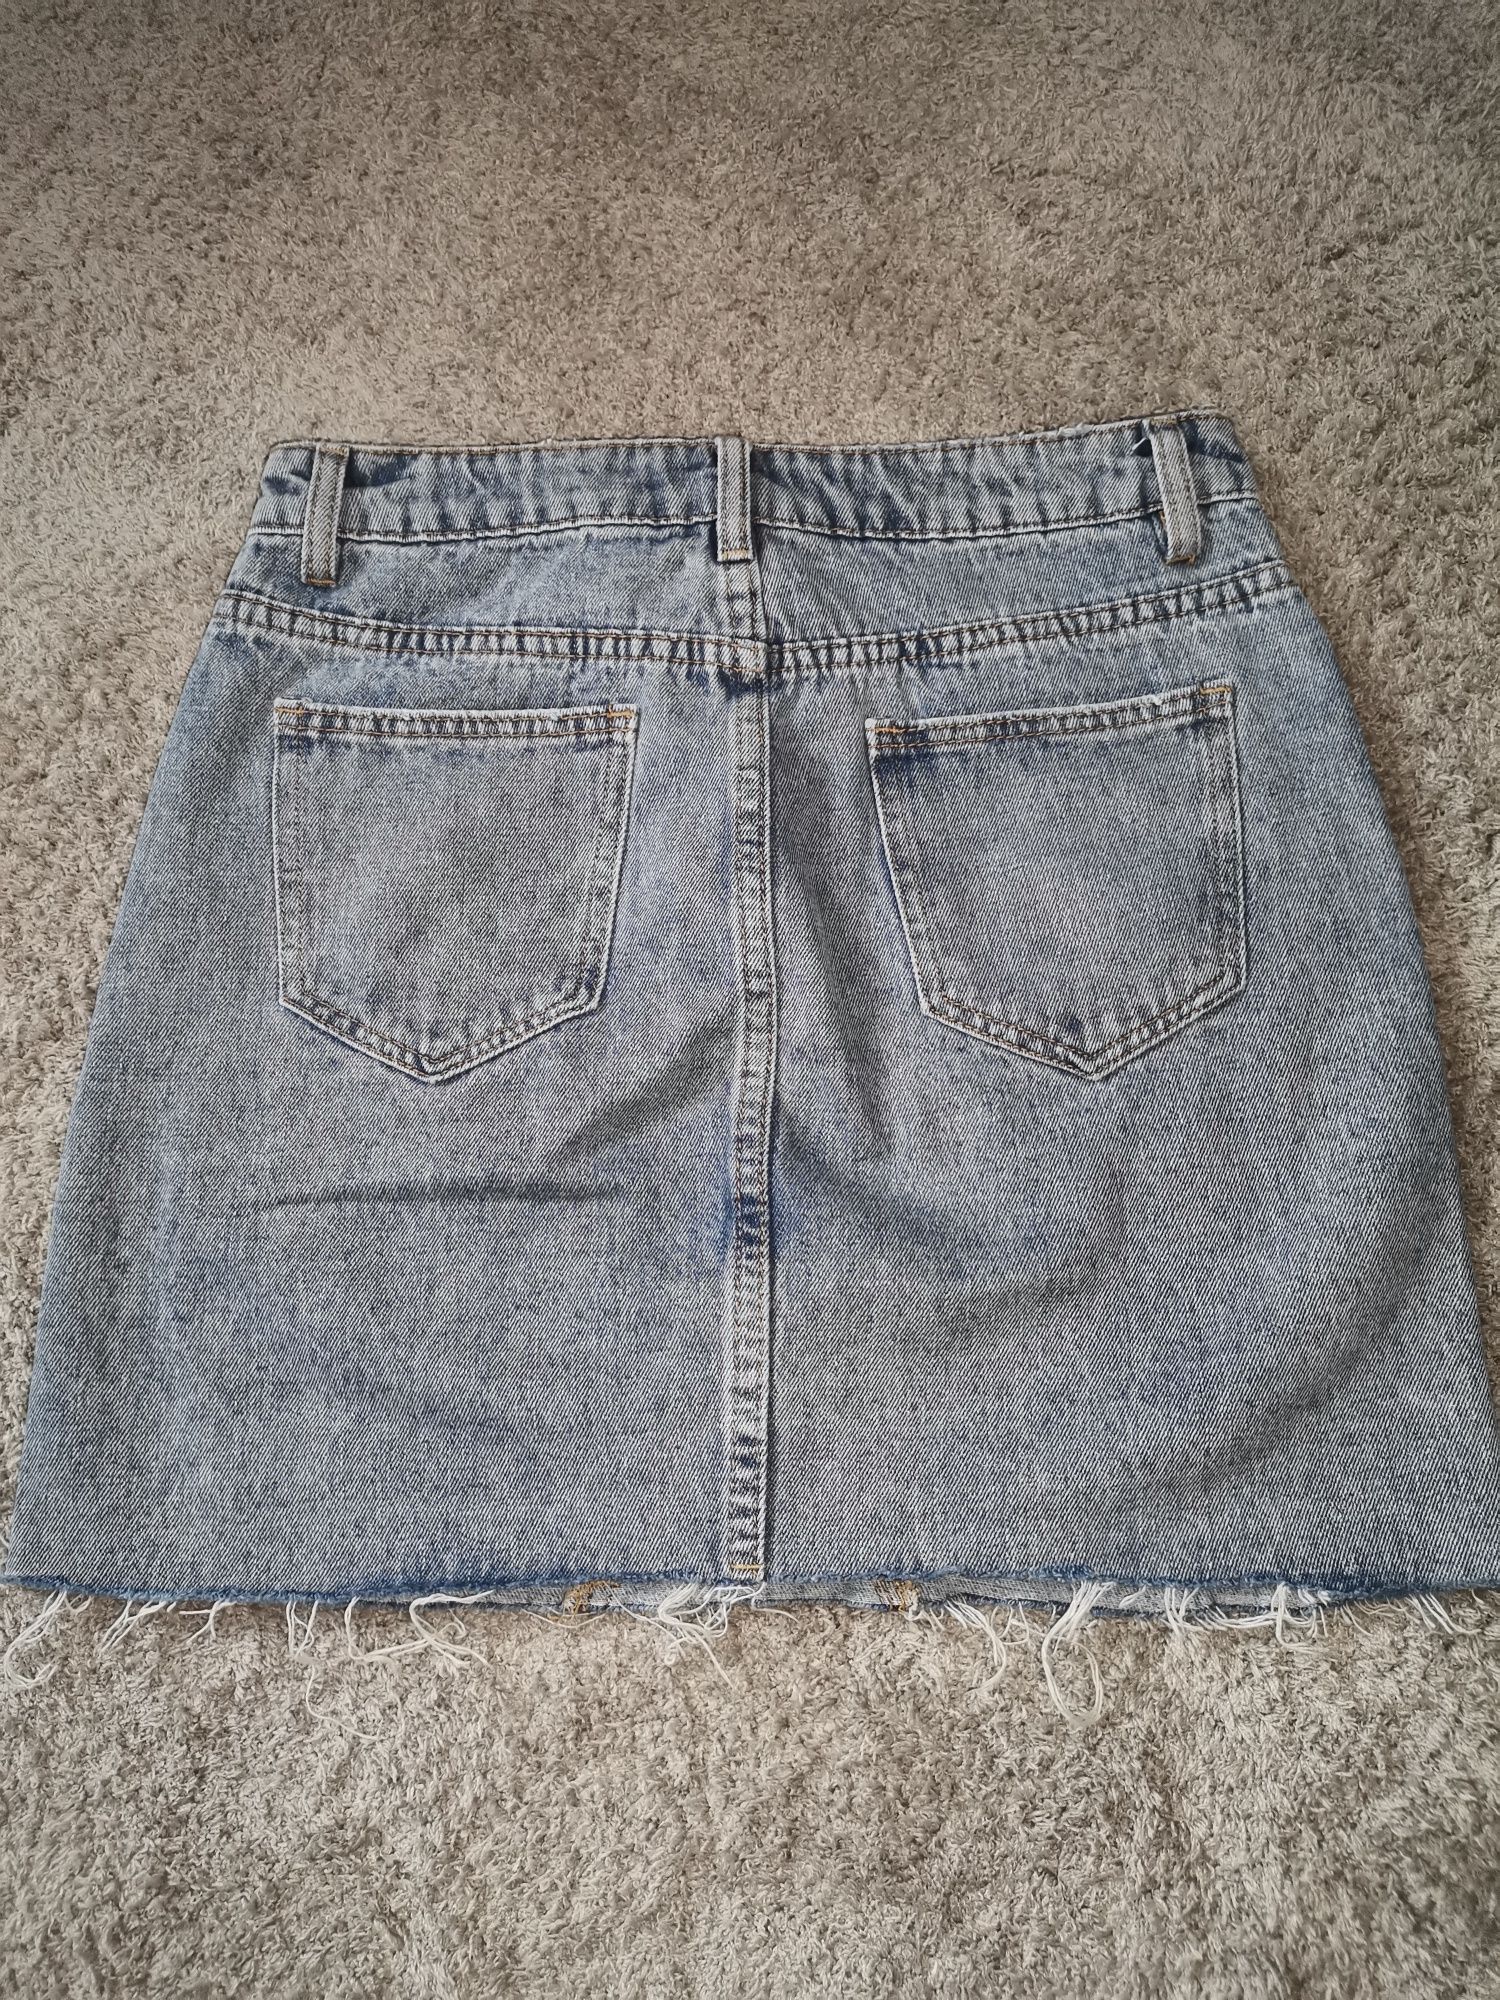 Spódnica jeansowa 34 Mohito jasnoniebieska spódnica dżinsowa z nitkami